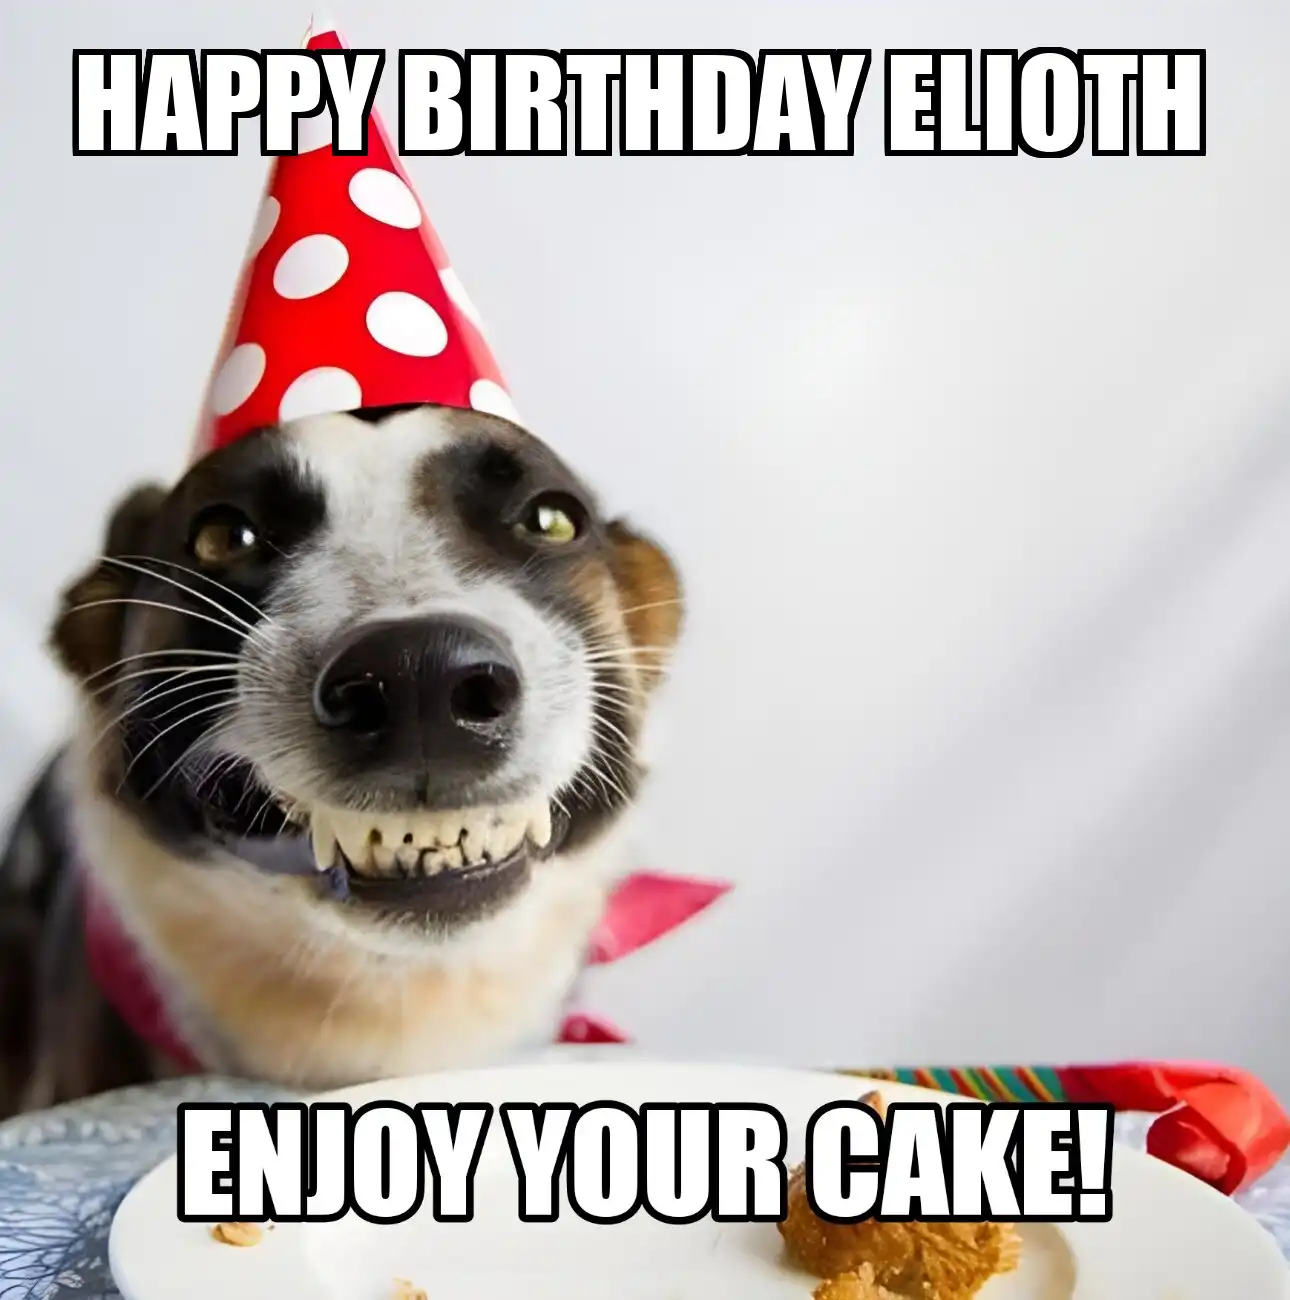 Happy Birthday Elioth Enjoy Your Cake Dog Meme